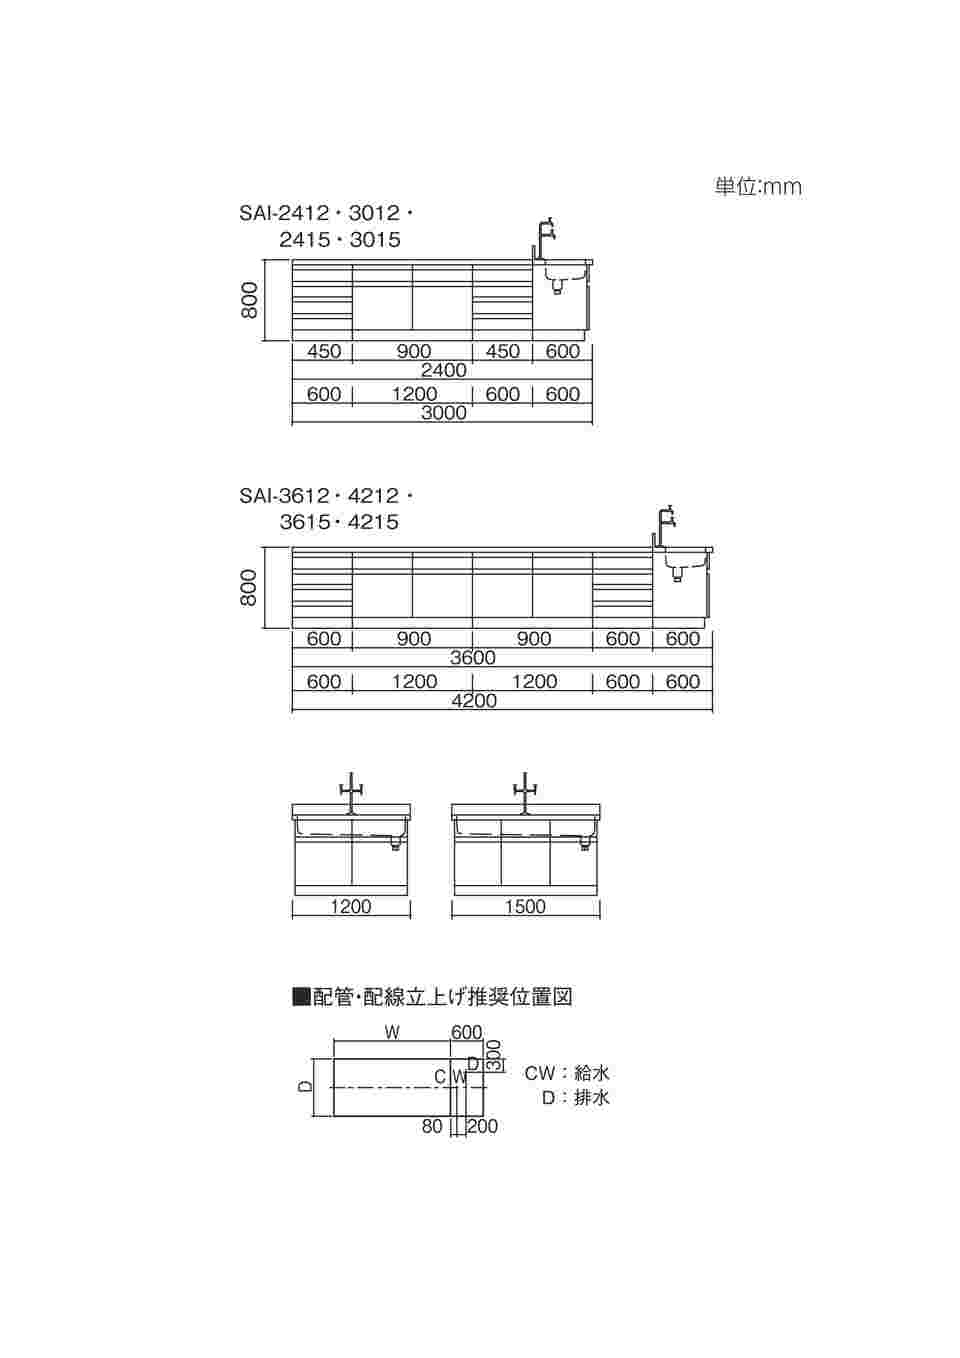 3-7770-02 中央実験台 木製タイプ (3000×1500×800/930mm) SAI-3015